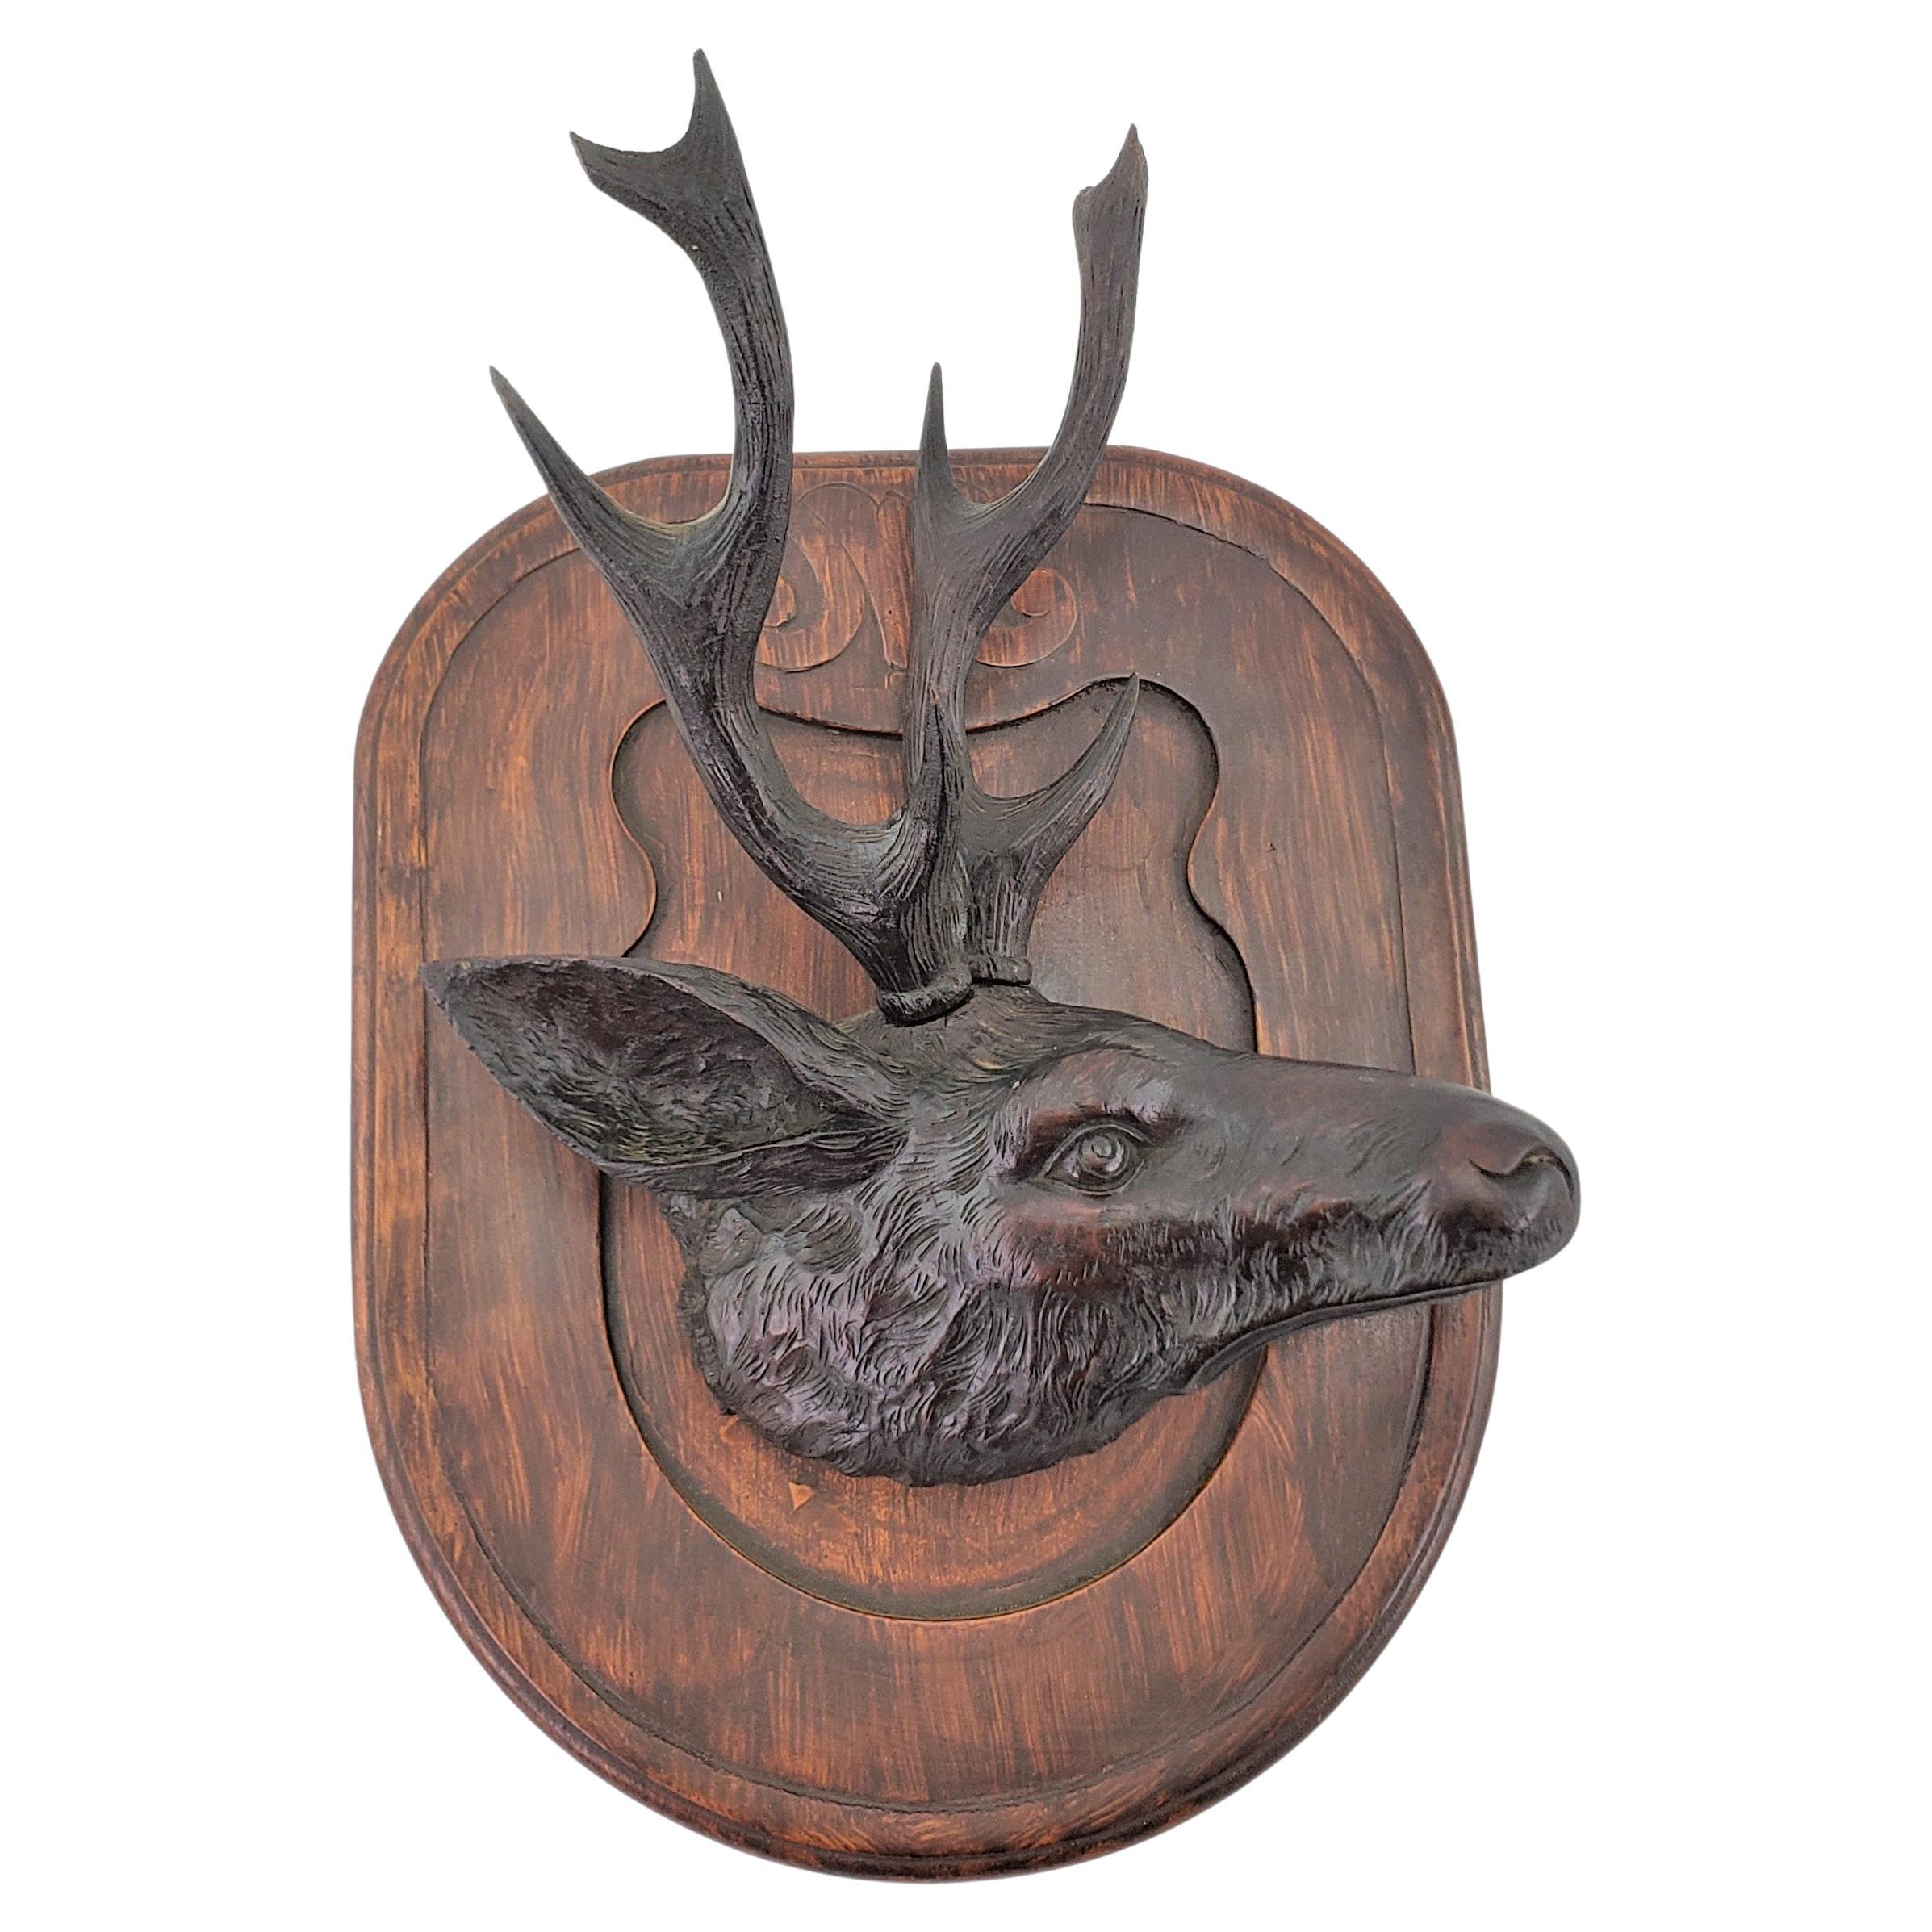 Antique Black Forest Hand-Carved Deer or Elk Head Wall Plaque or Sculpture